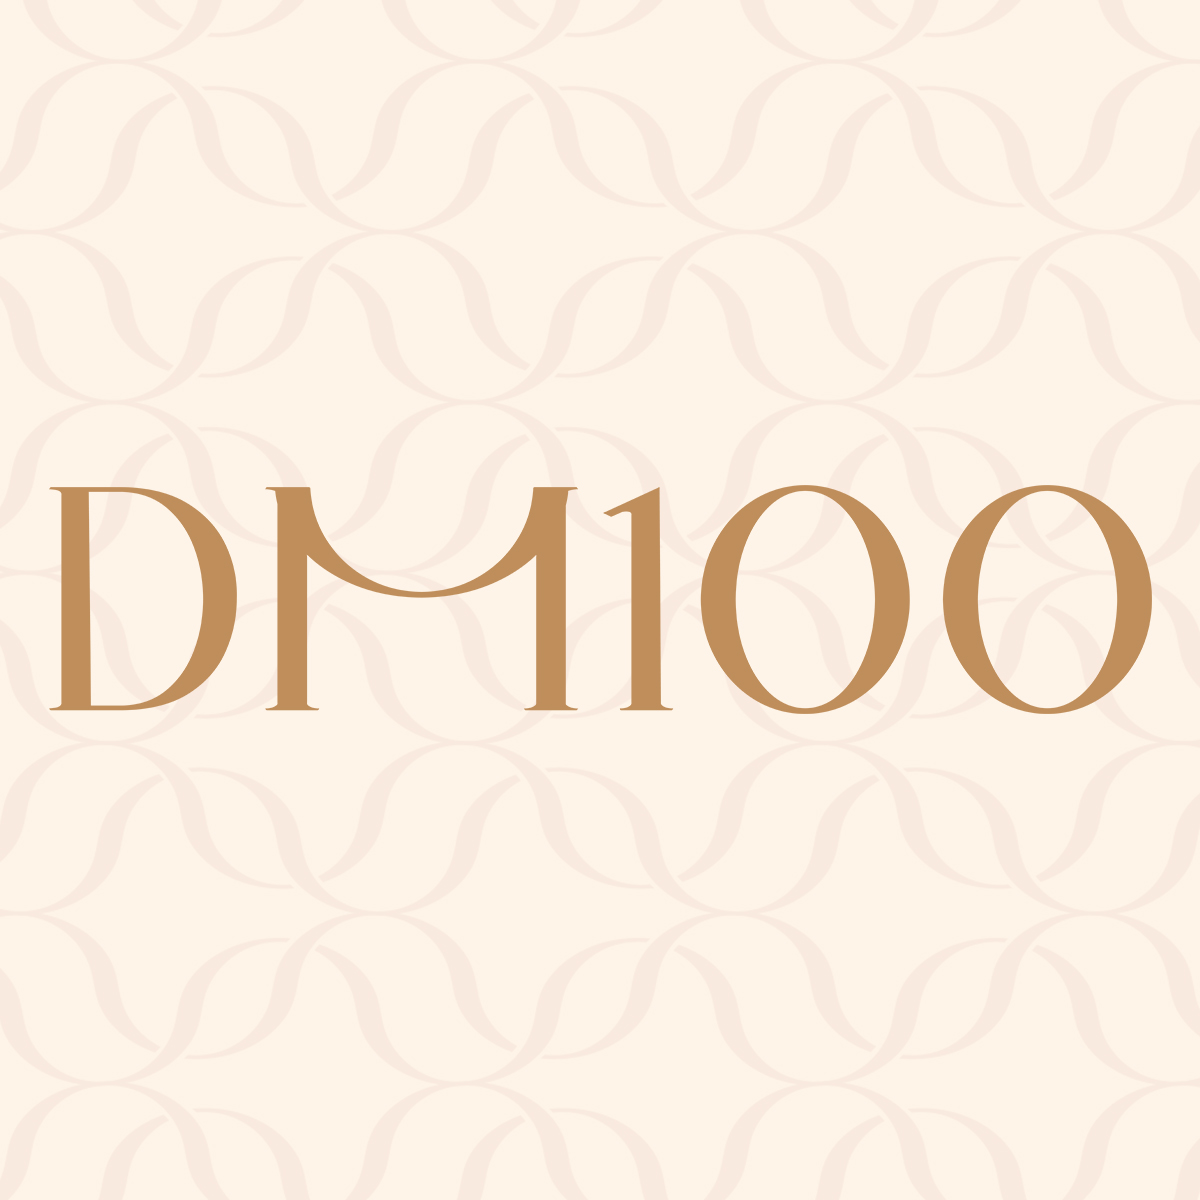 DM100服饰旗舰店